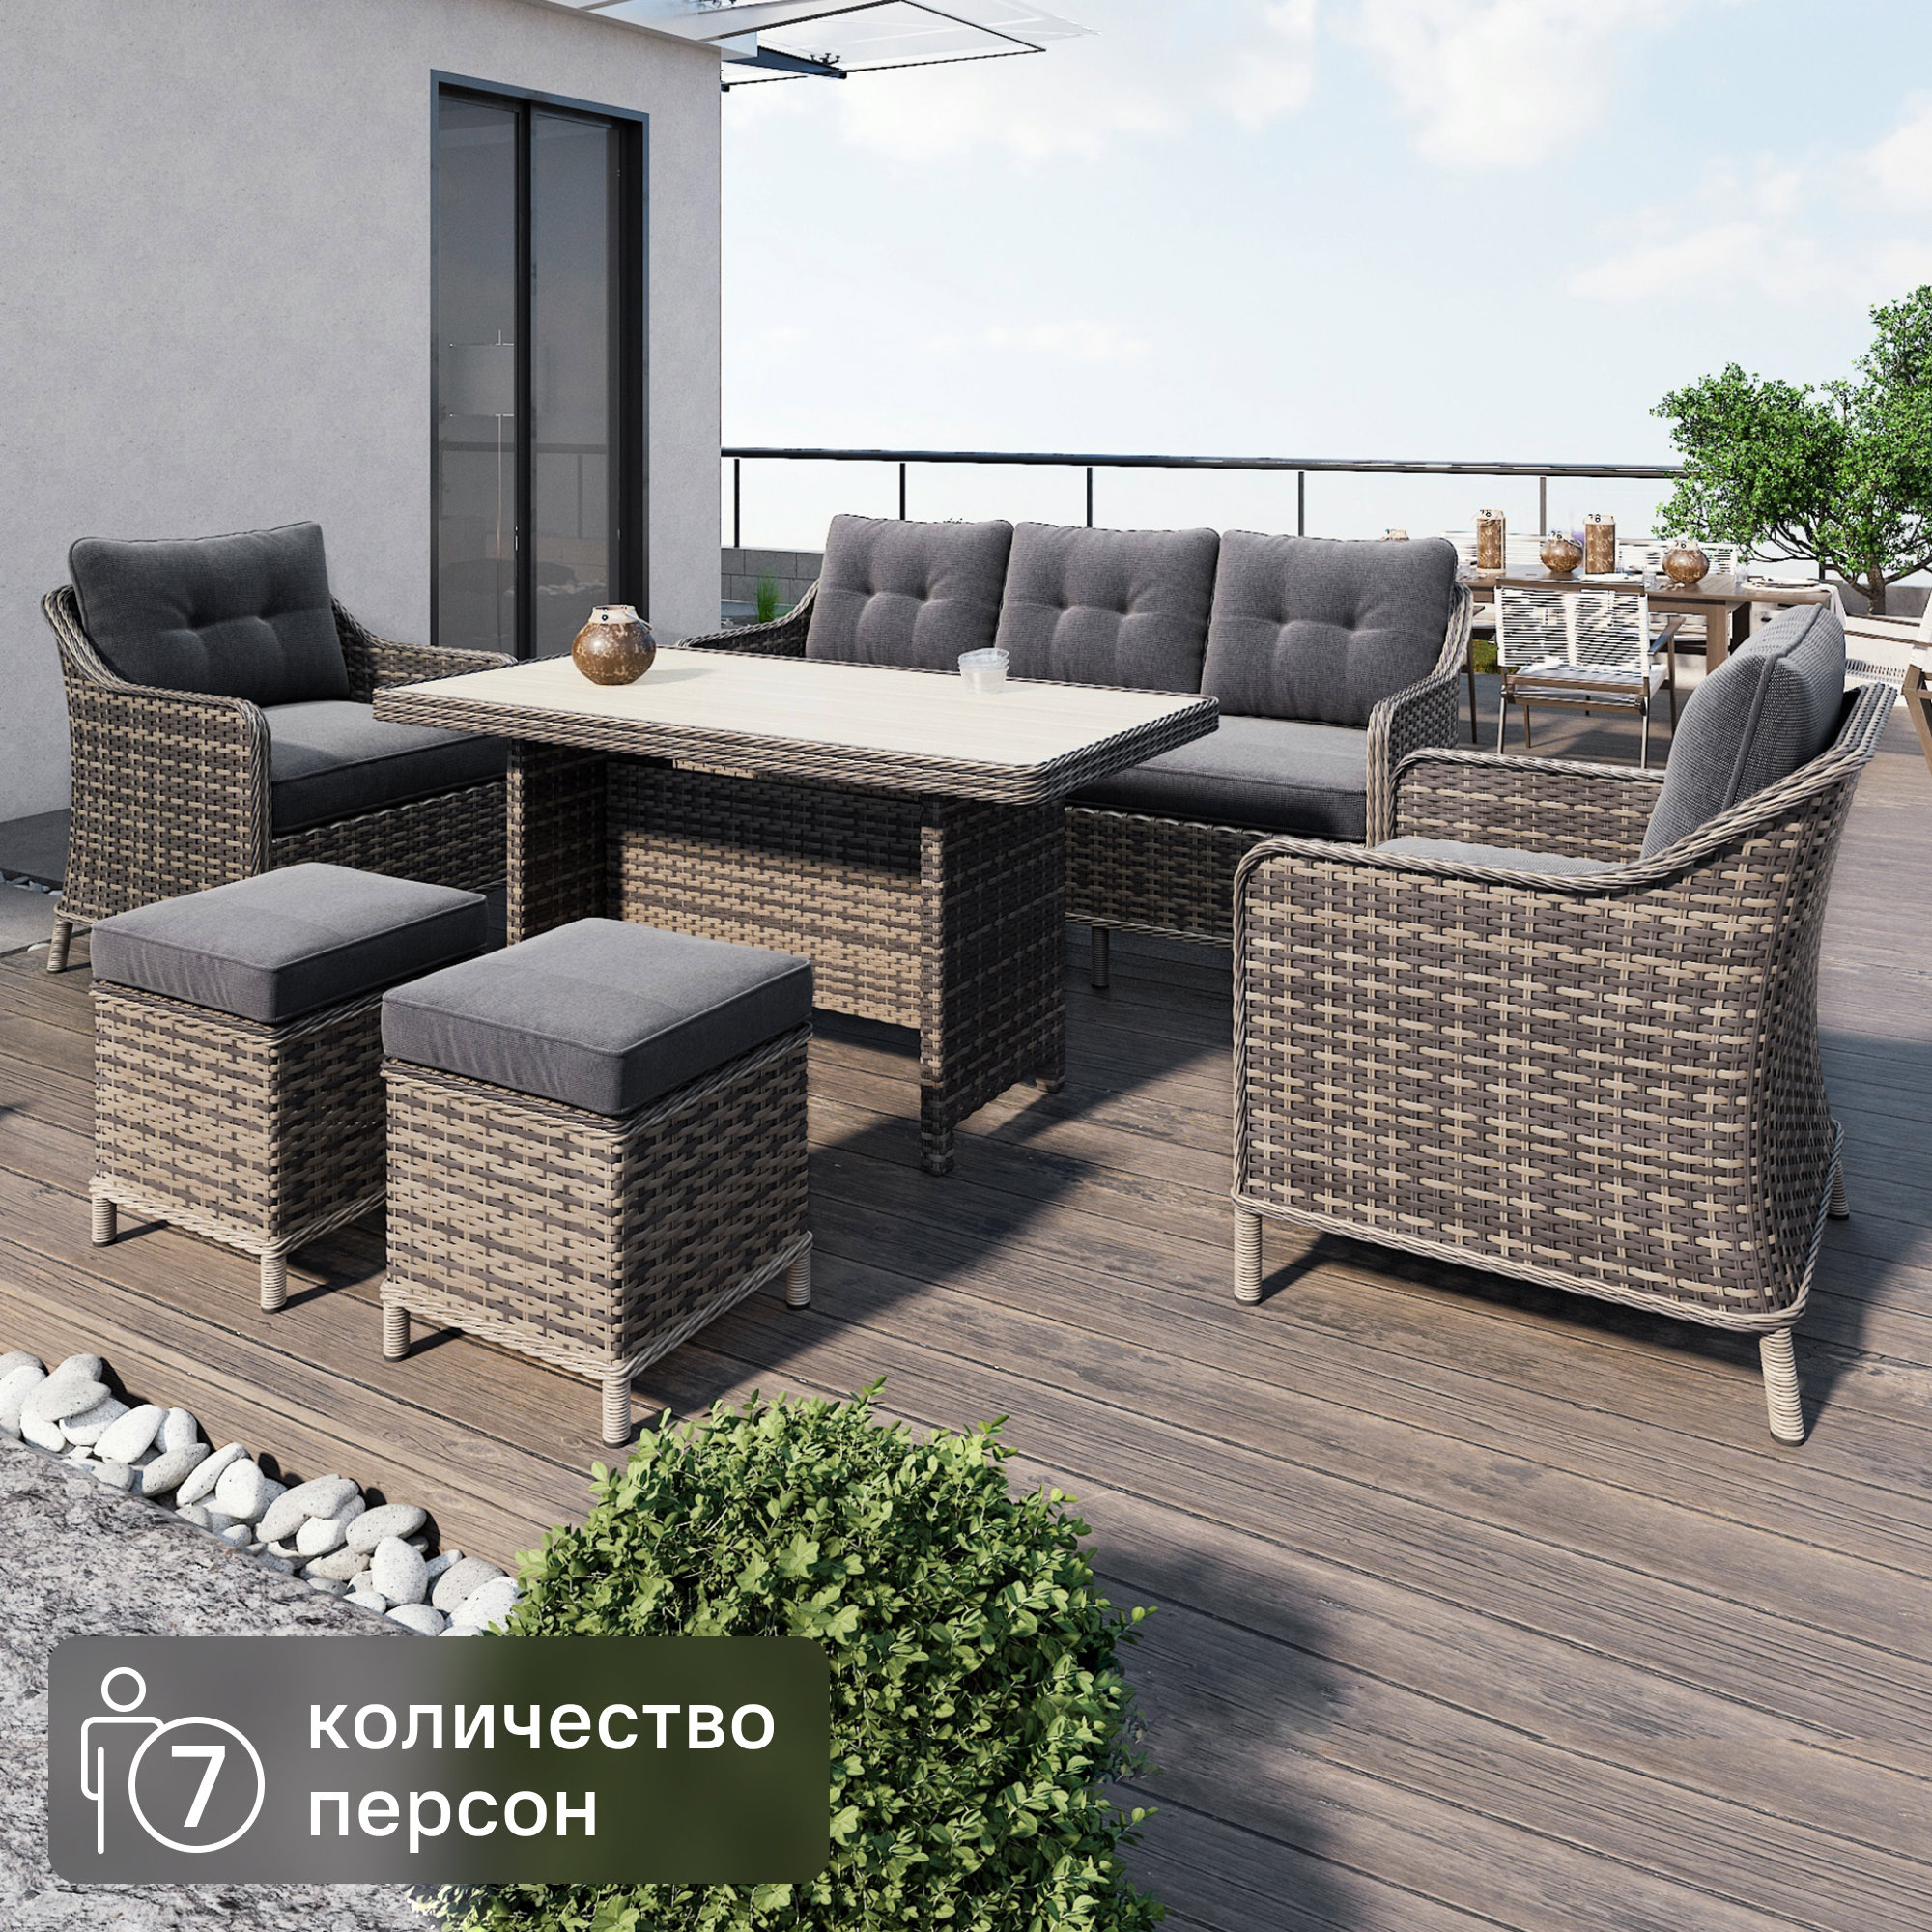 Набор садовой мебели для обеда Cezar KJ-Z2115B искусственный ротанг бежевый: диван, стол, 2 пуфа, 2 кресла с подушками